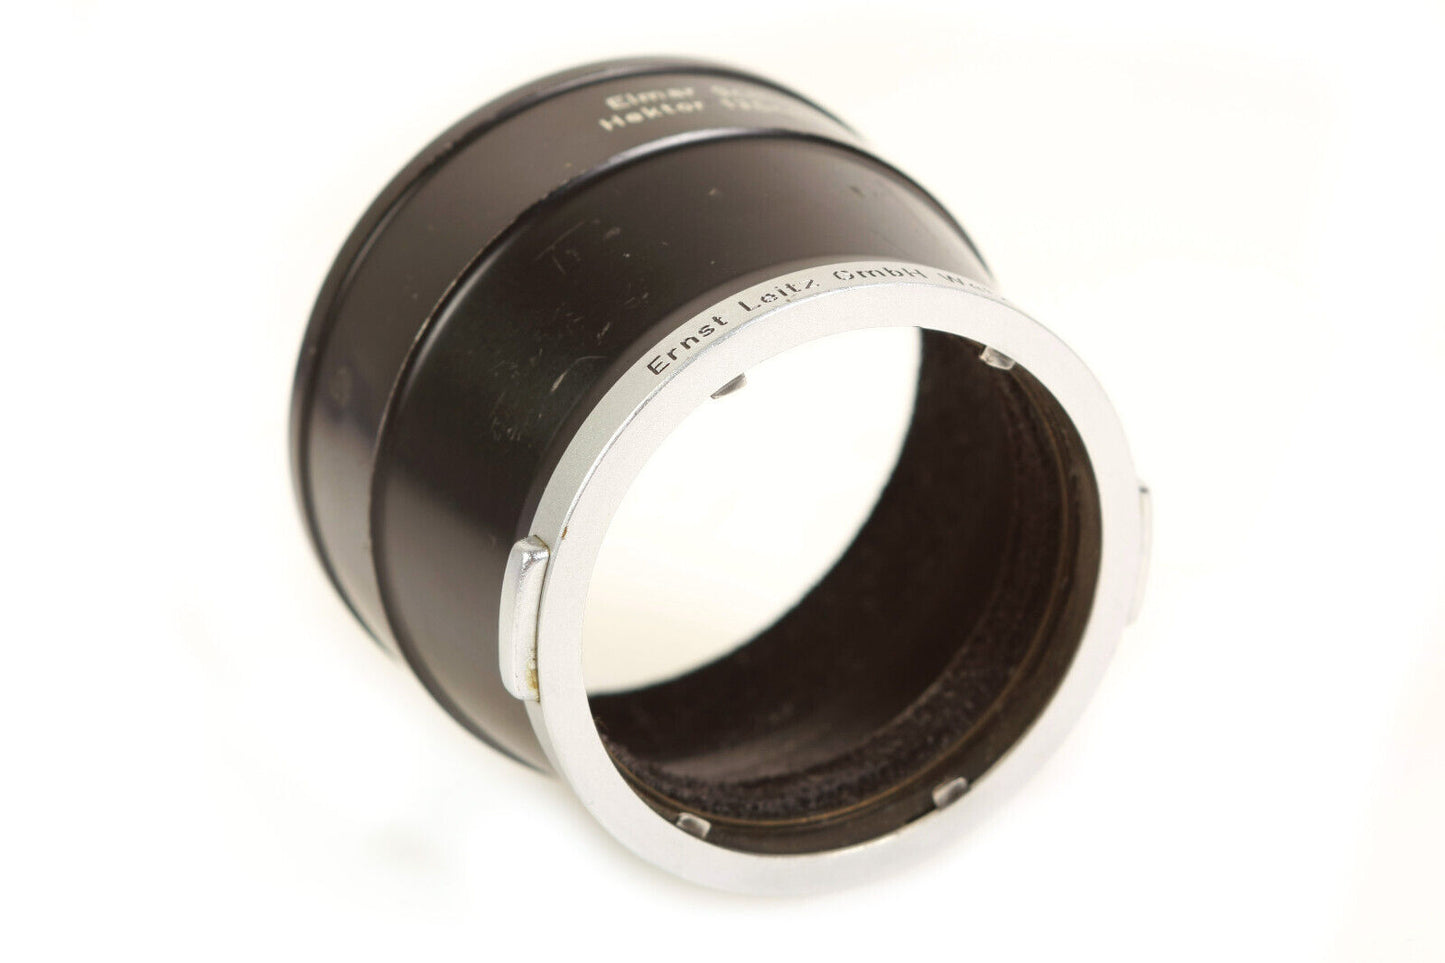 Leica Leitz Lens Hood for Elmar 9cm and Hektor 13.5cm